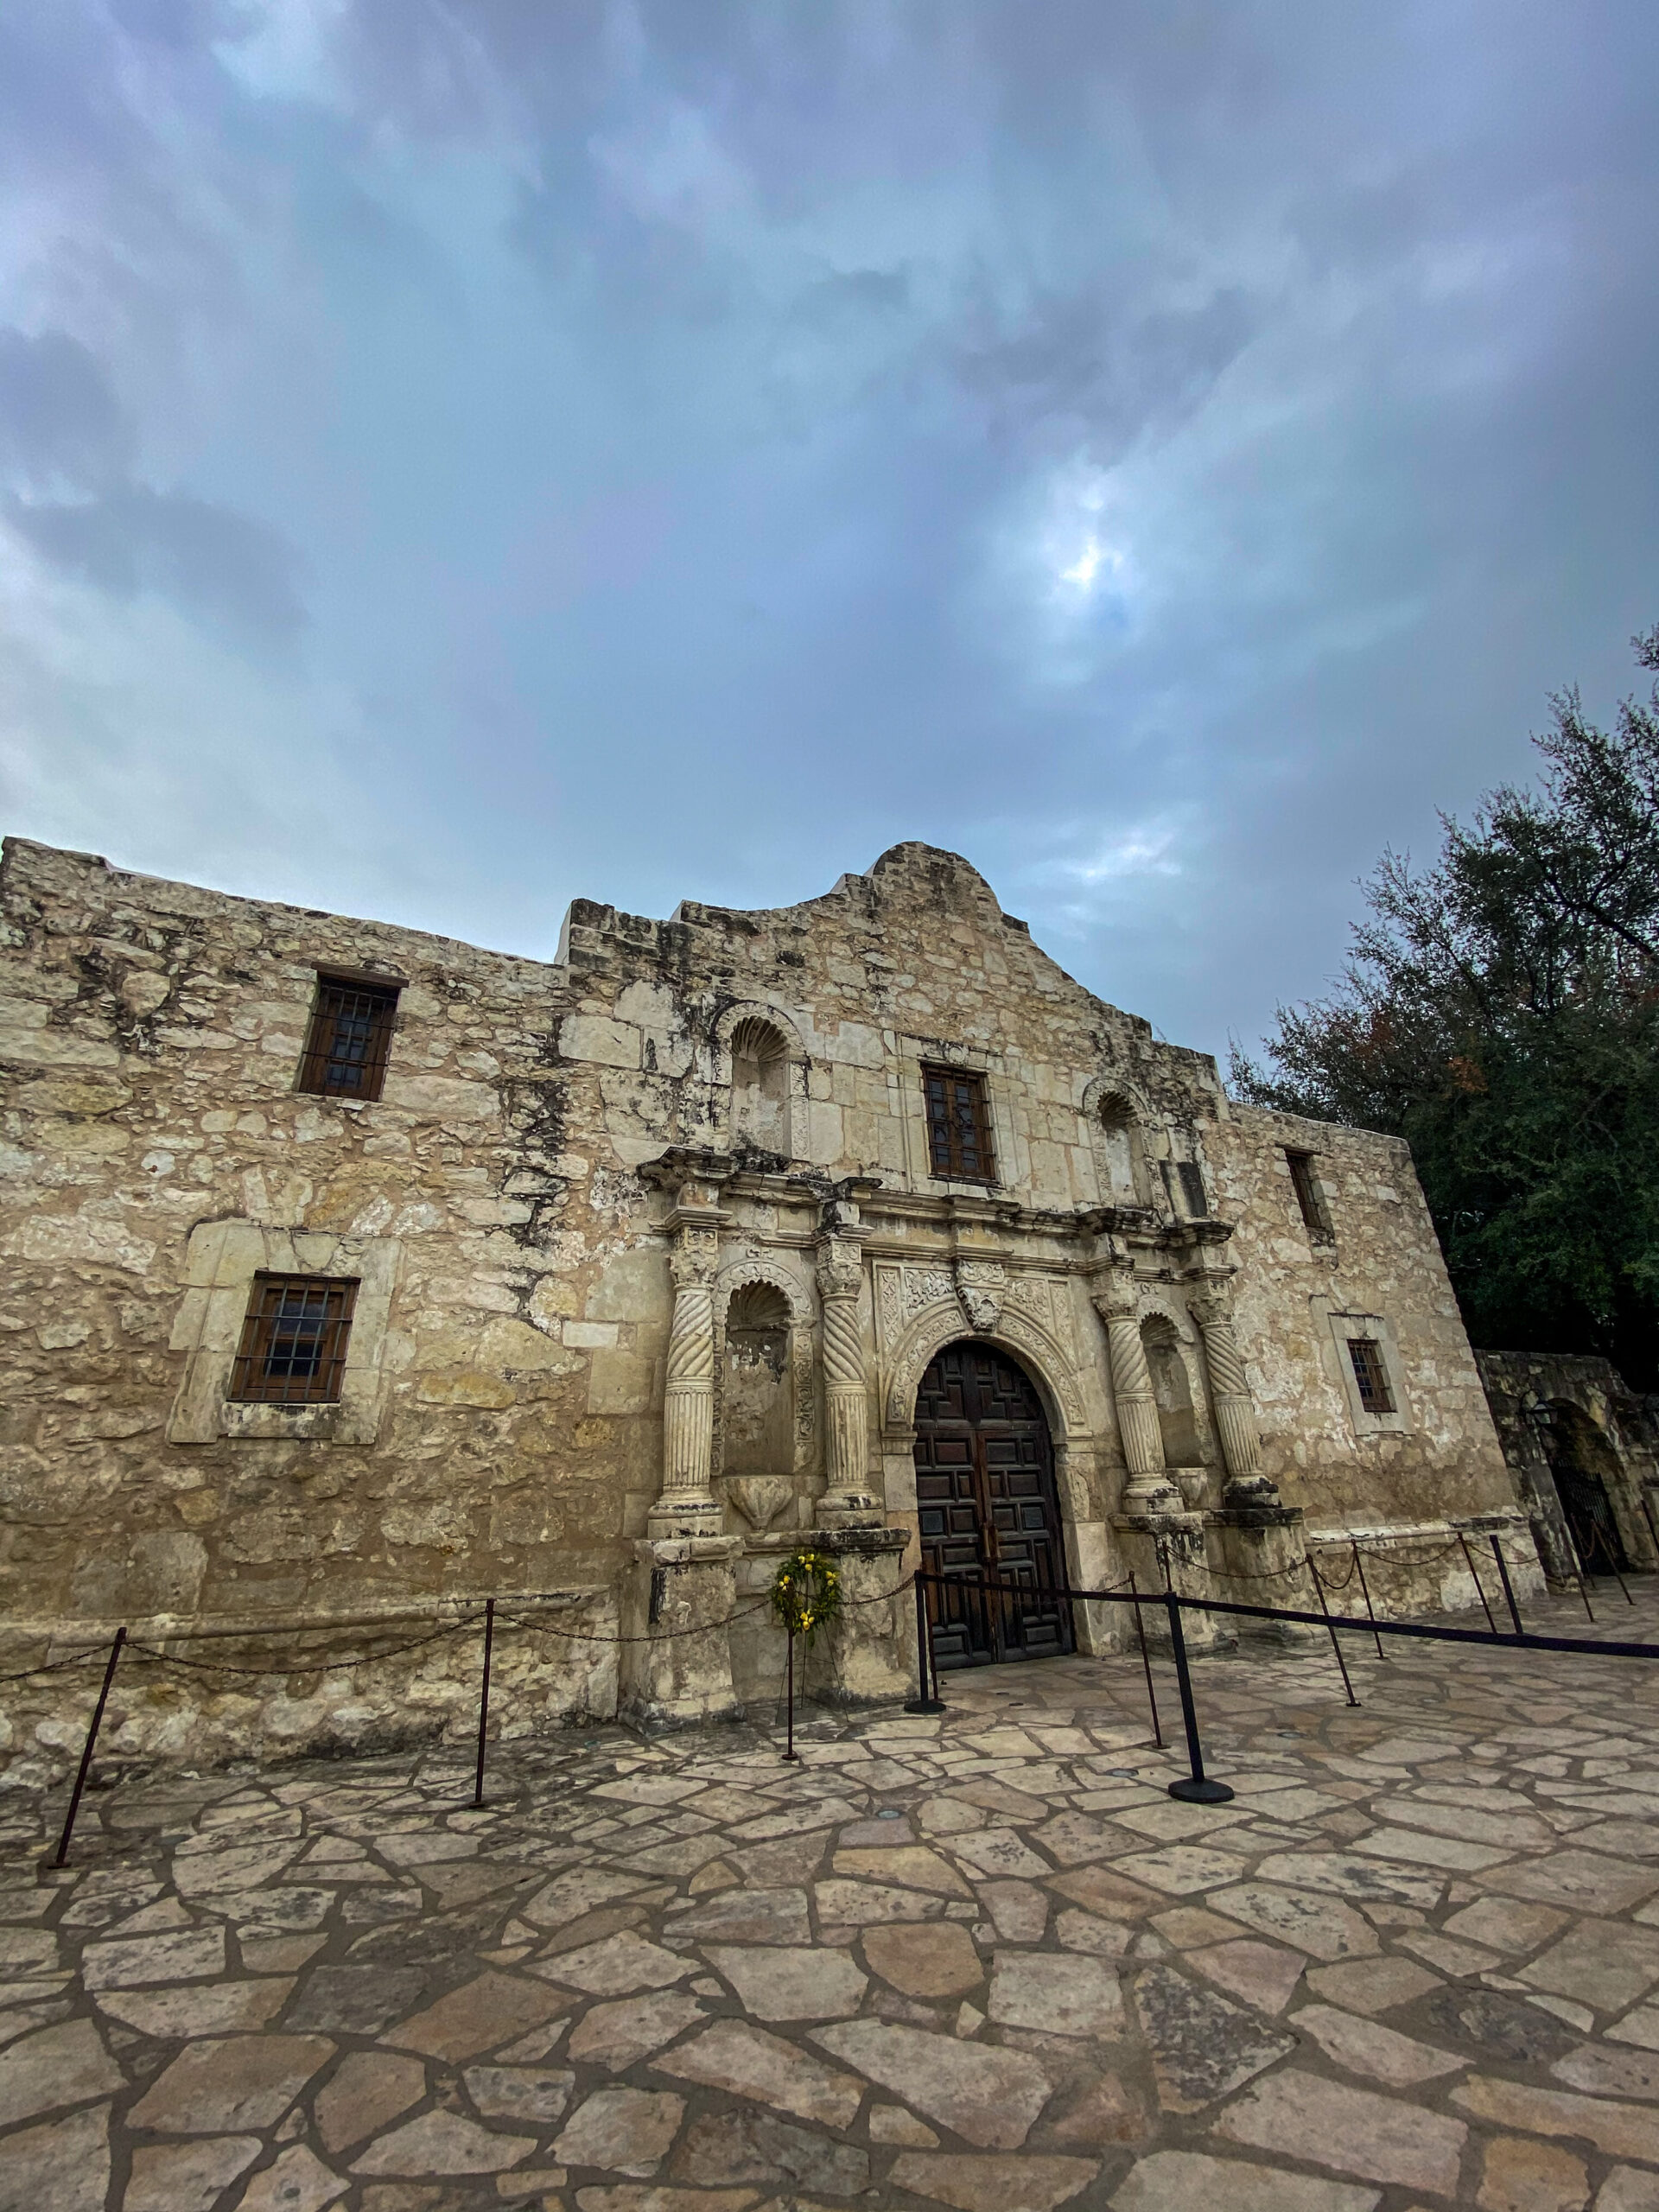 San Antonio's The Alamo